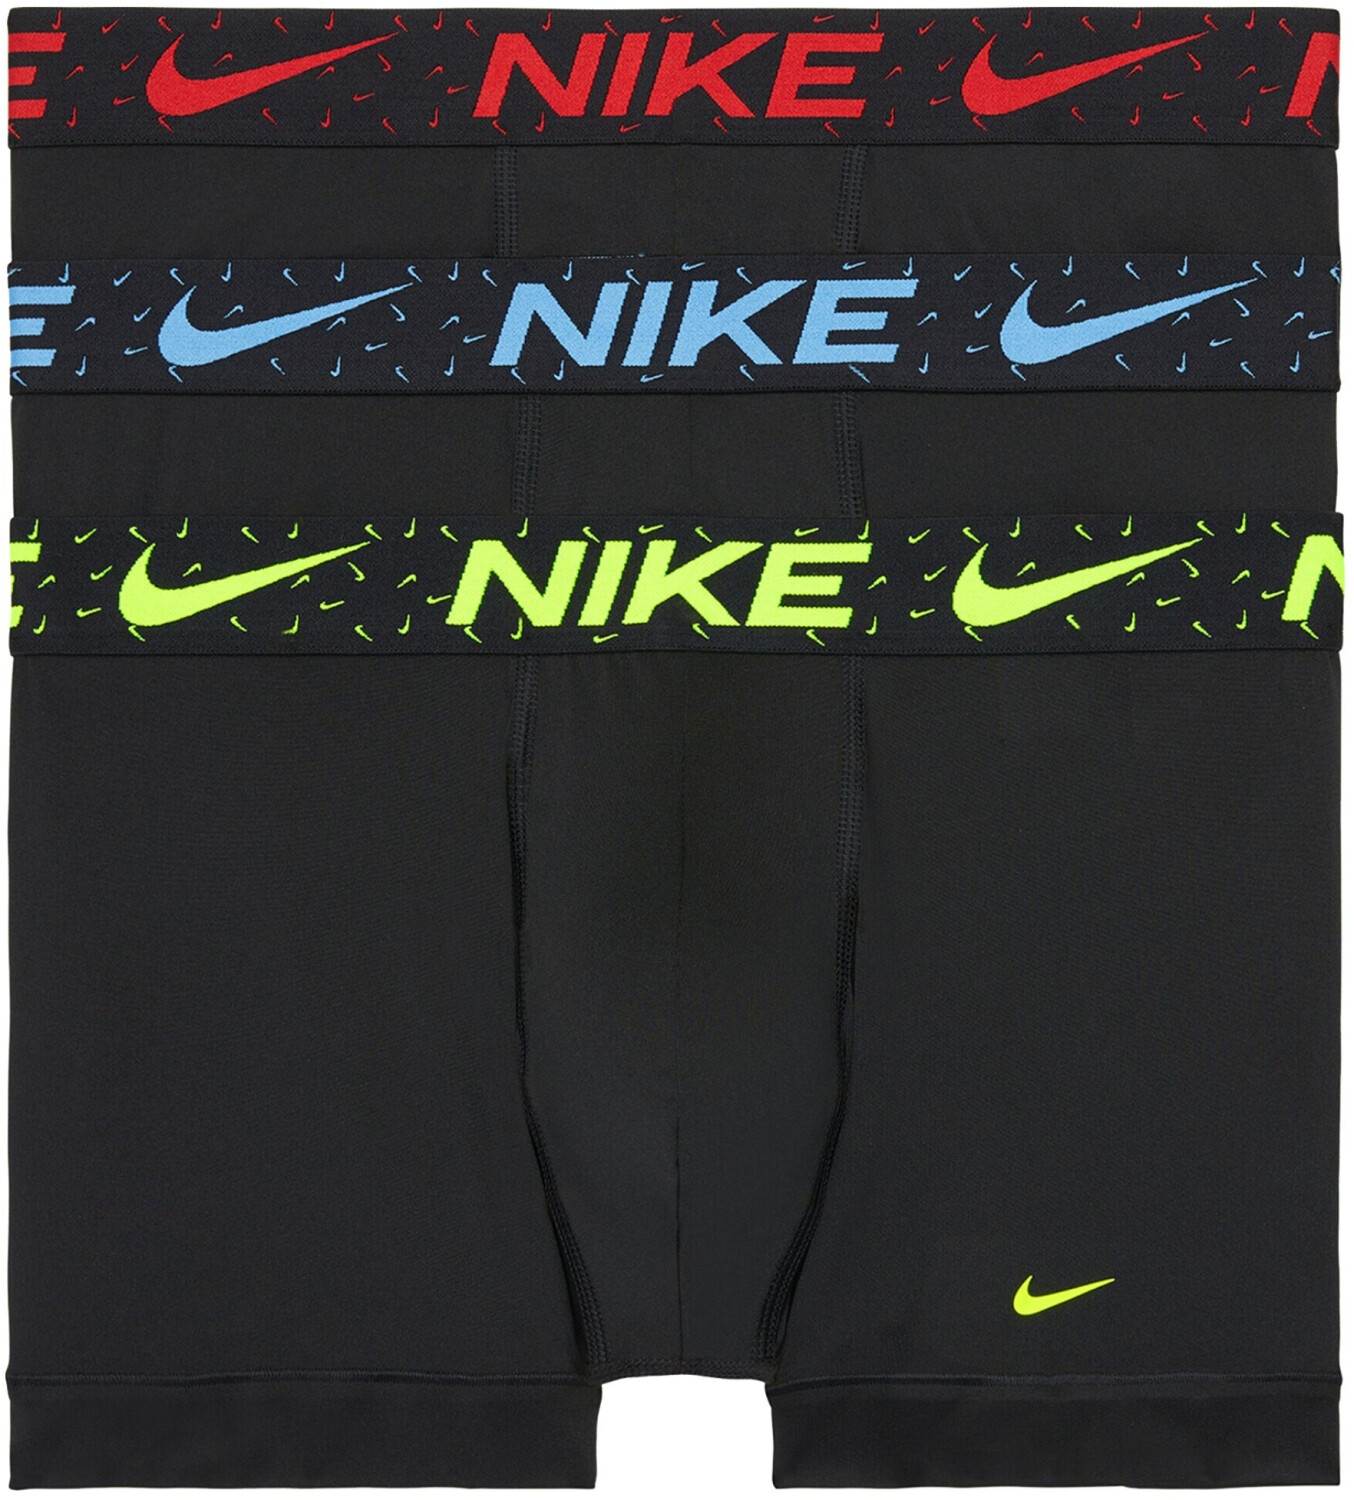 Les boxeurs courts Dri-FIT Essential Micro Emballage de 3, Nike